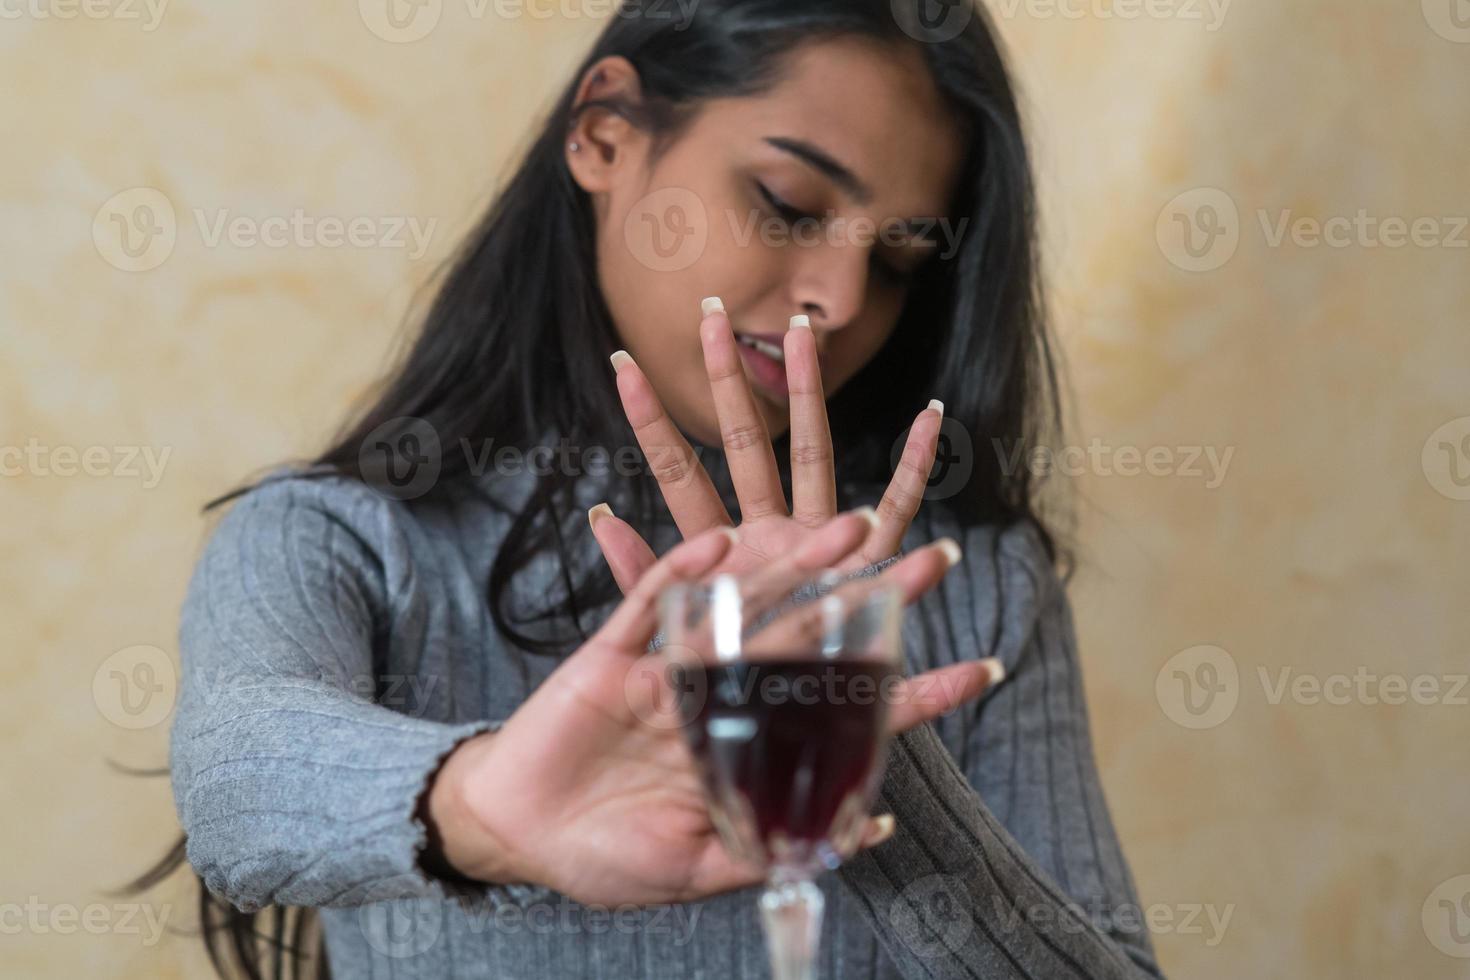 desistindo do álcool uma jovem na mesa recusa uma taça de vinho tinto com a mão foto